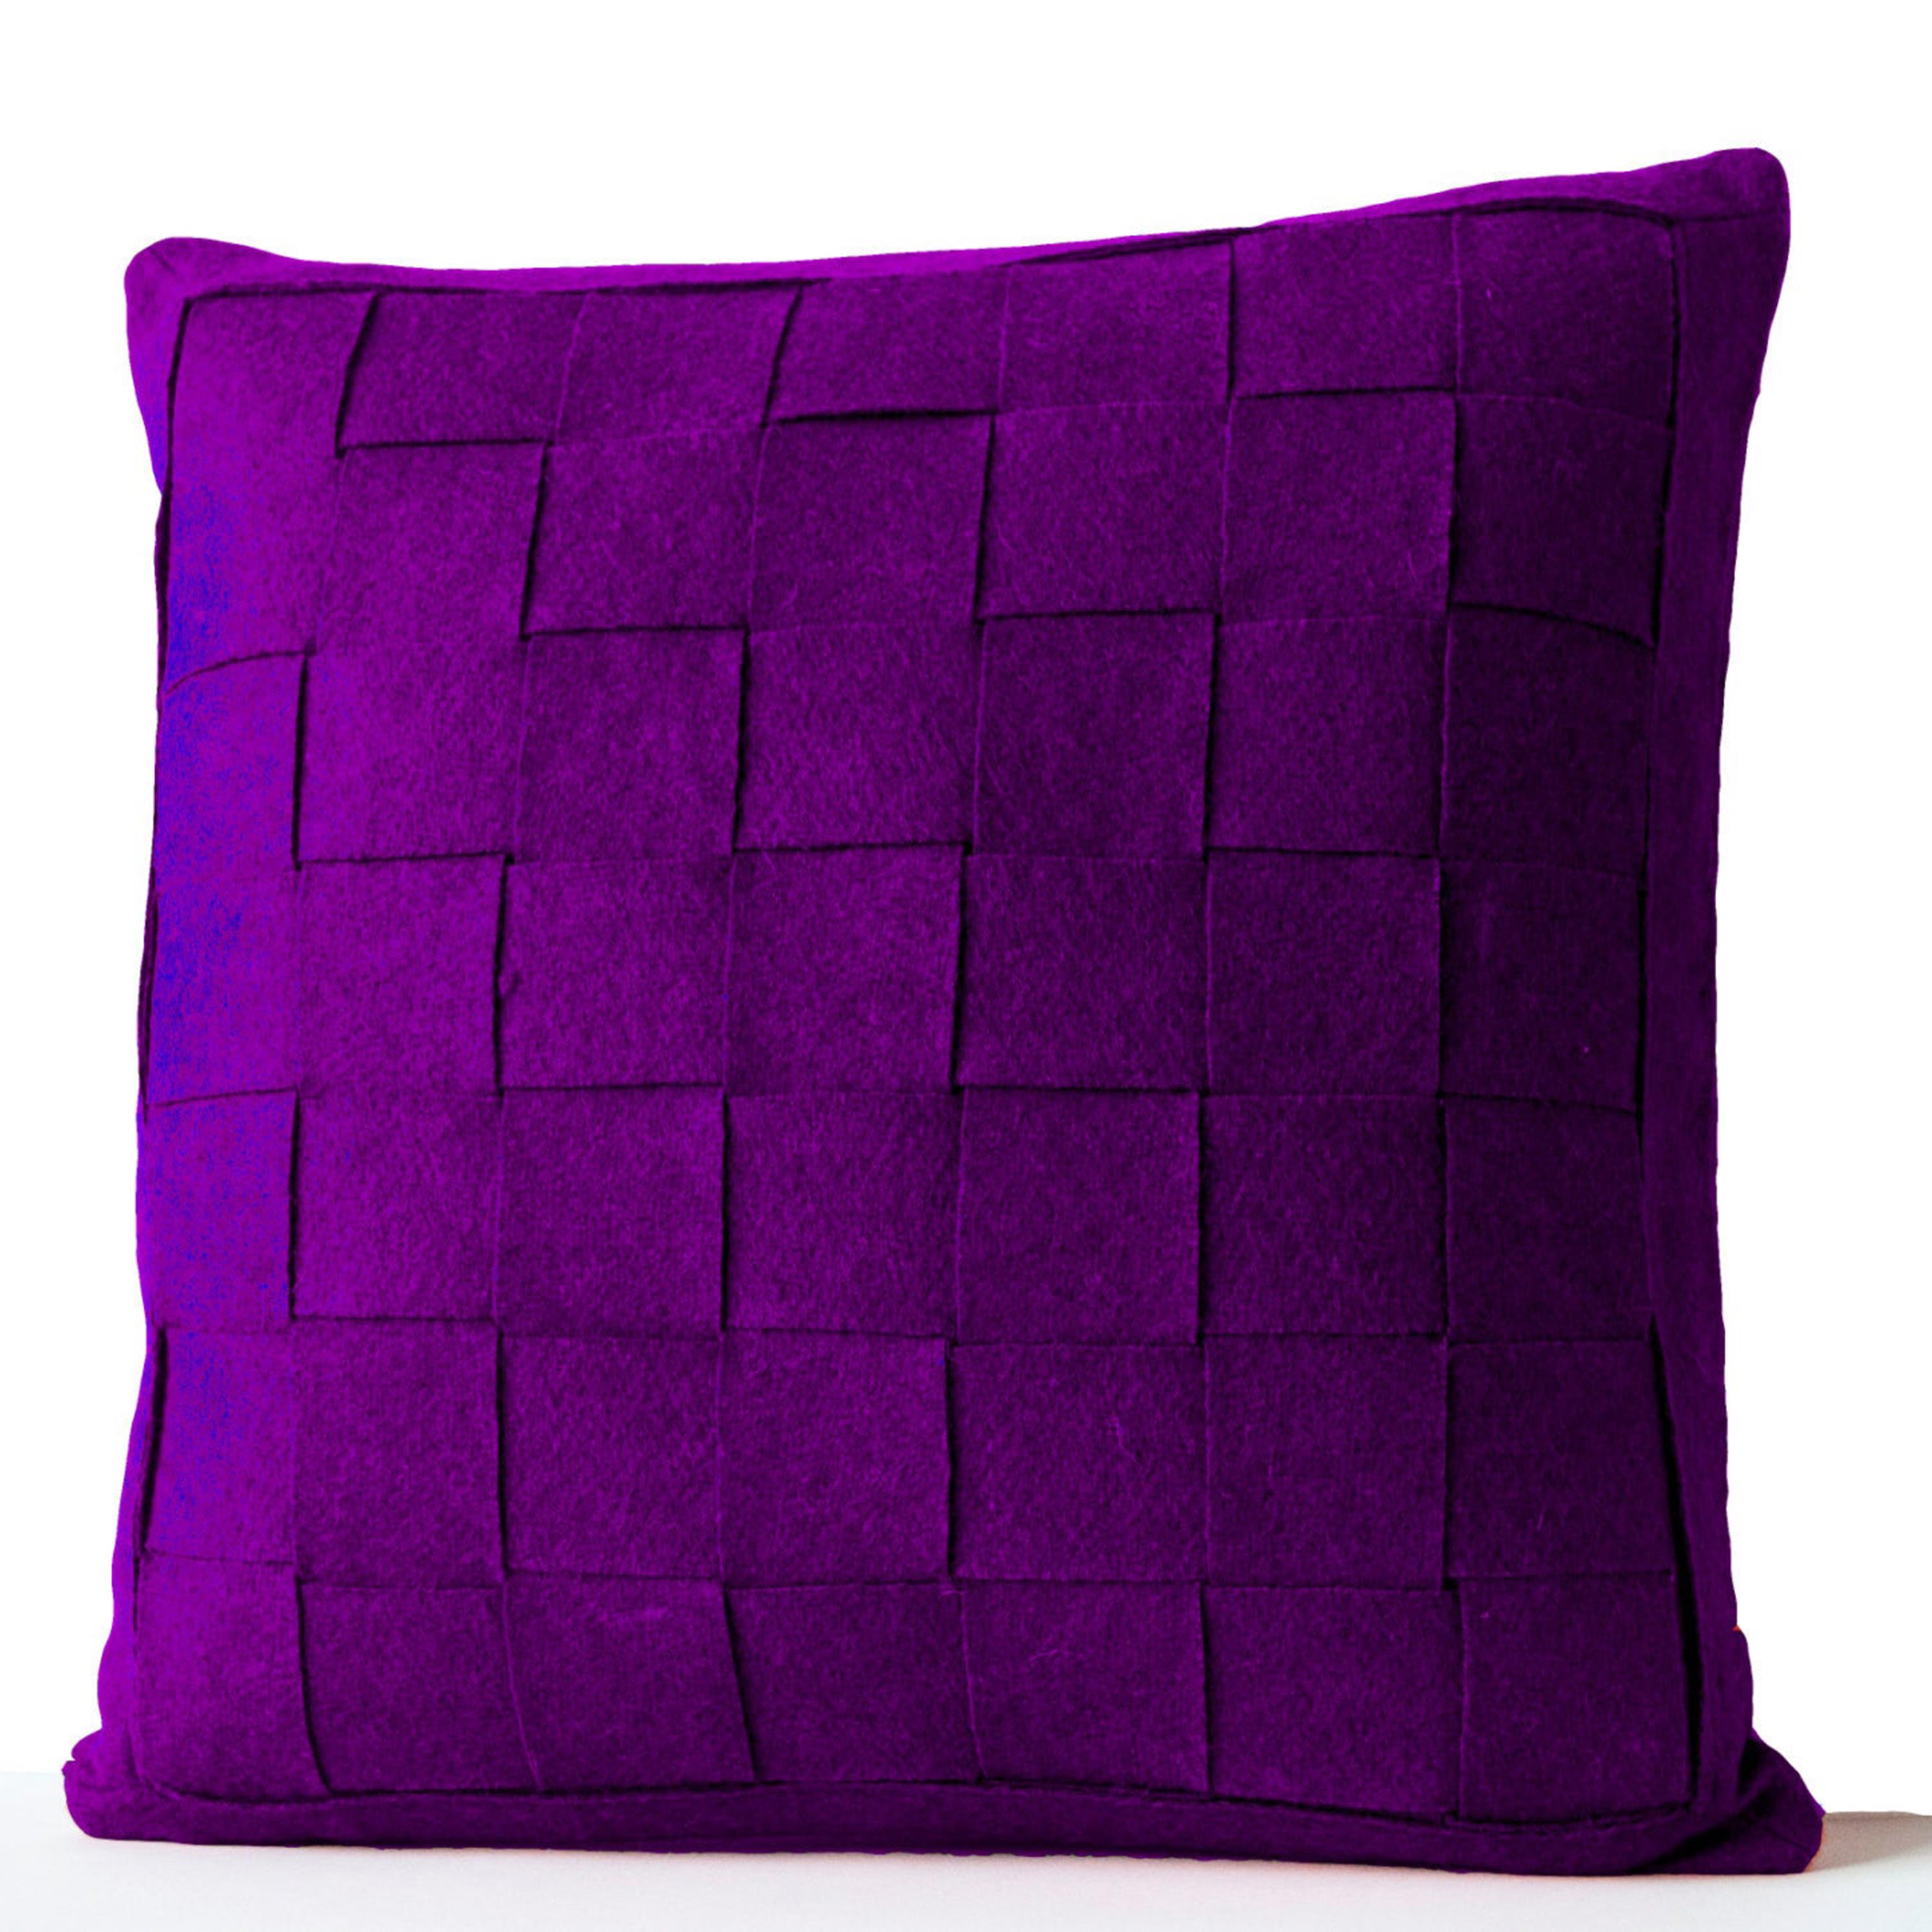 Purple Pillow - Felt Weave Pillows -Throw Pillow- Decorative Pillow- Gift- 18 inch square -Modern decor -Chair Pillow -Wool Mat Weave pillow